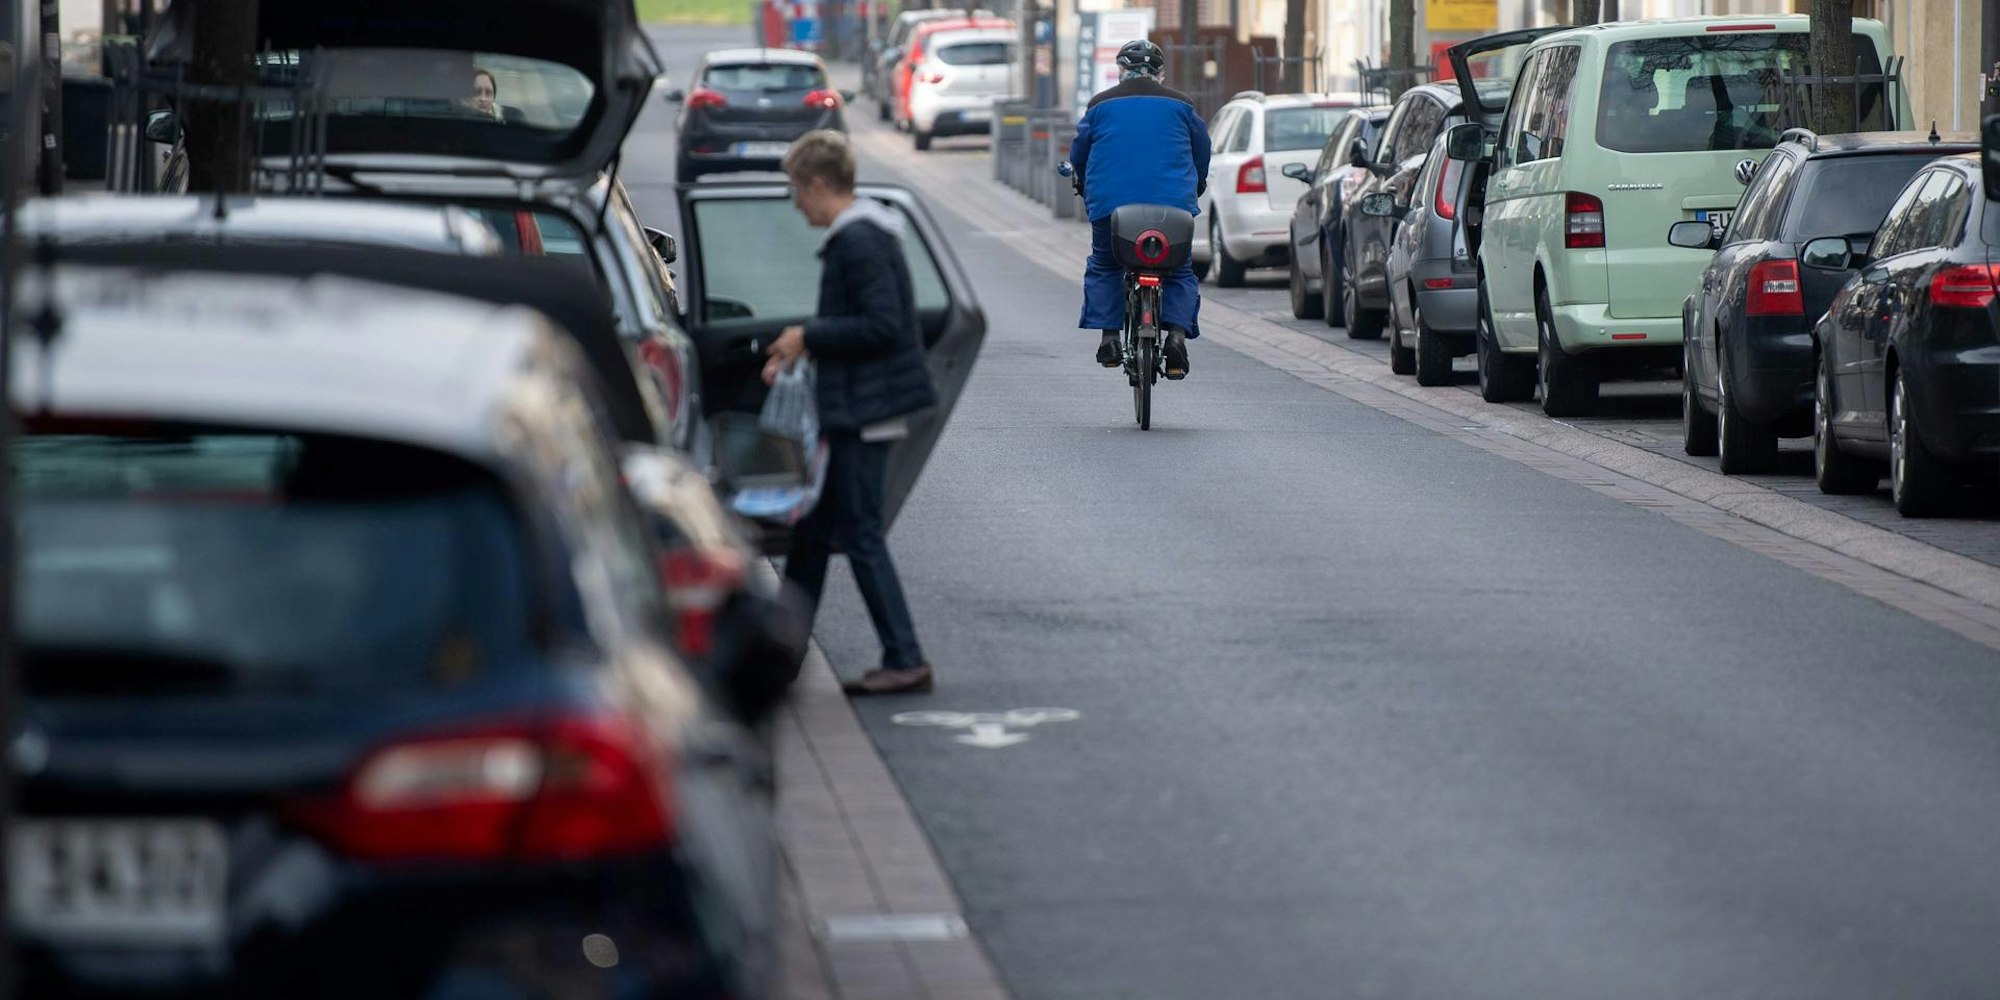 Für Radpendlerrouten müssen auch Fahrradstraßen eingerichtet werden. Auf diesen haben Radfahrer Vorrang vor Kraftfahrzeugen.